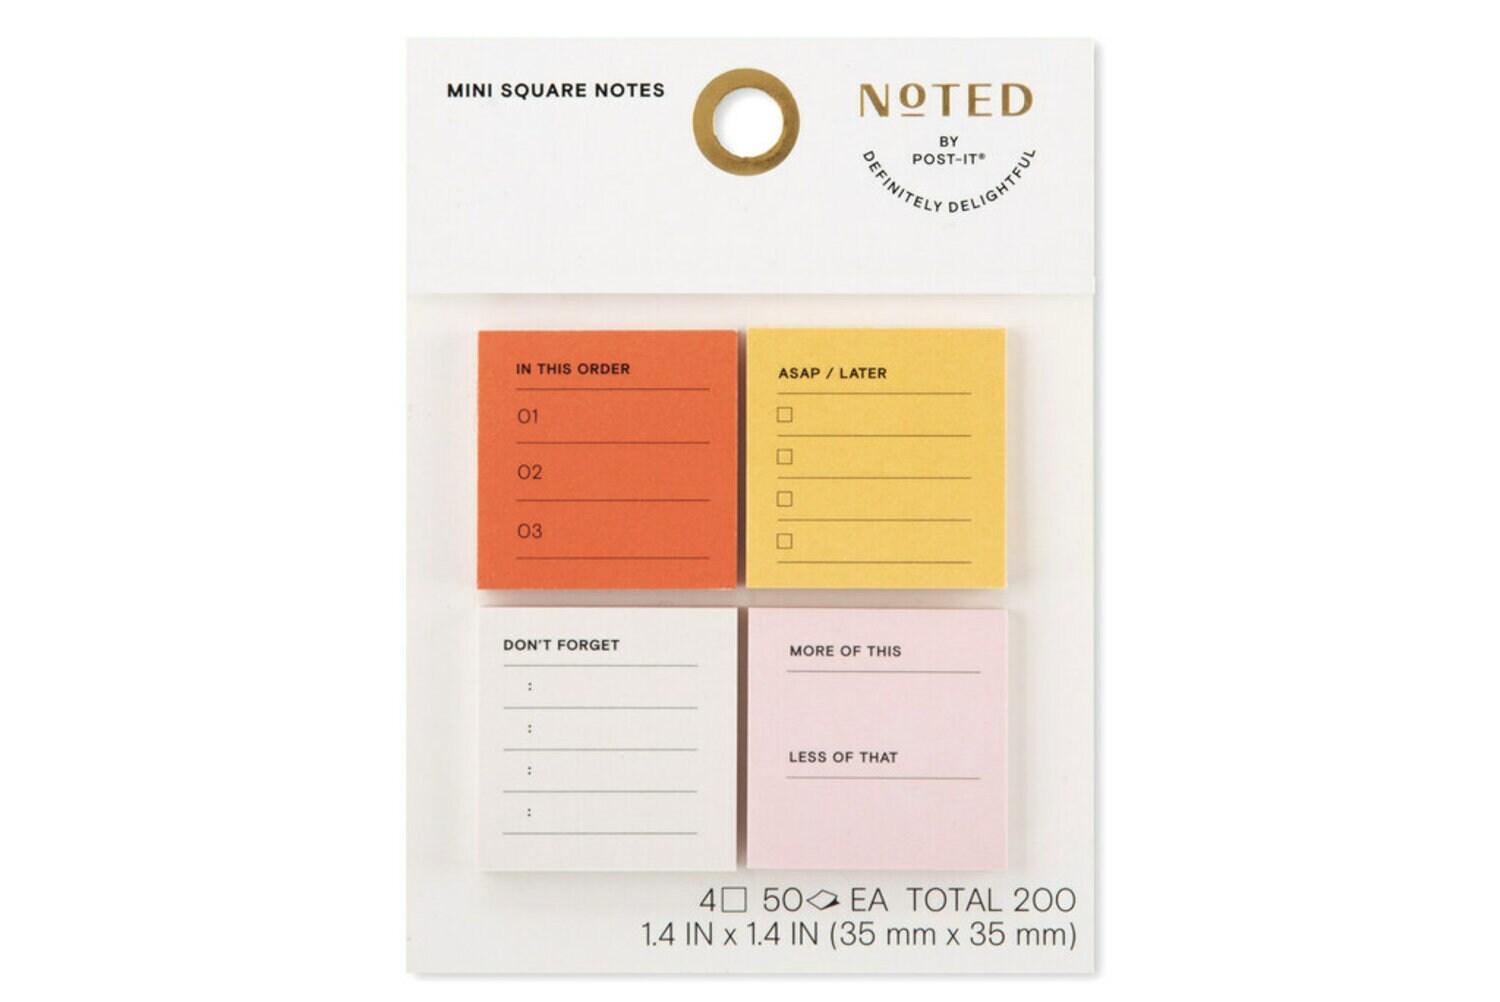 7100257947 - Post-it Printed Notes NTD-MINI-TD , 1.4 in x 1.4 in (35 mm x 35 mm)